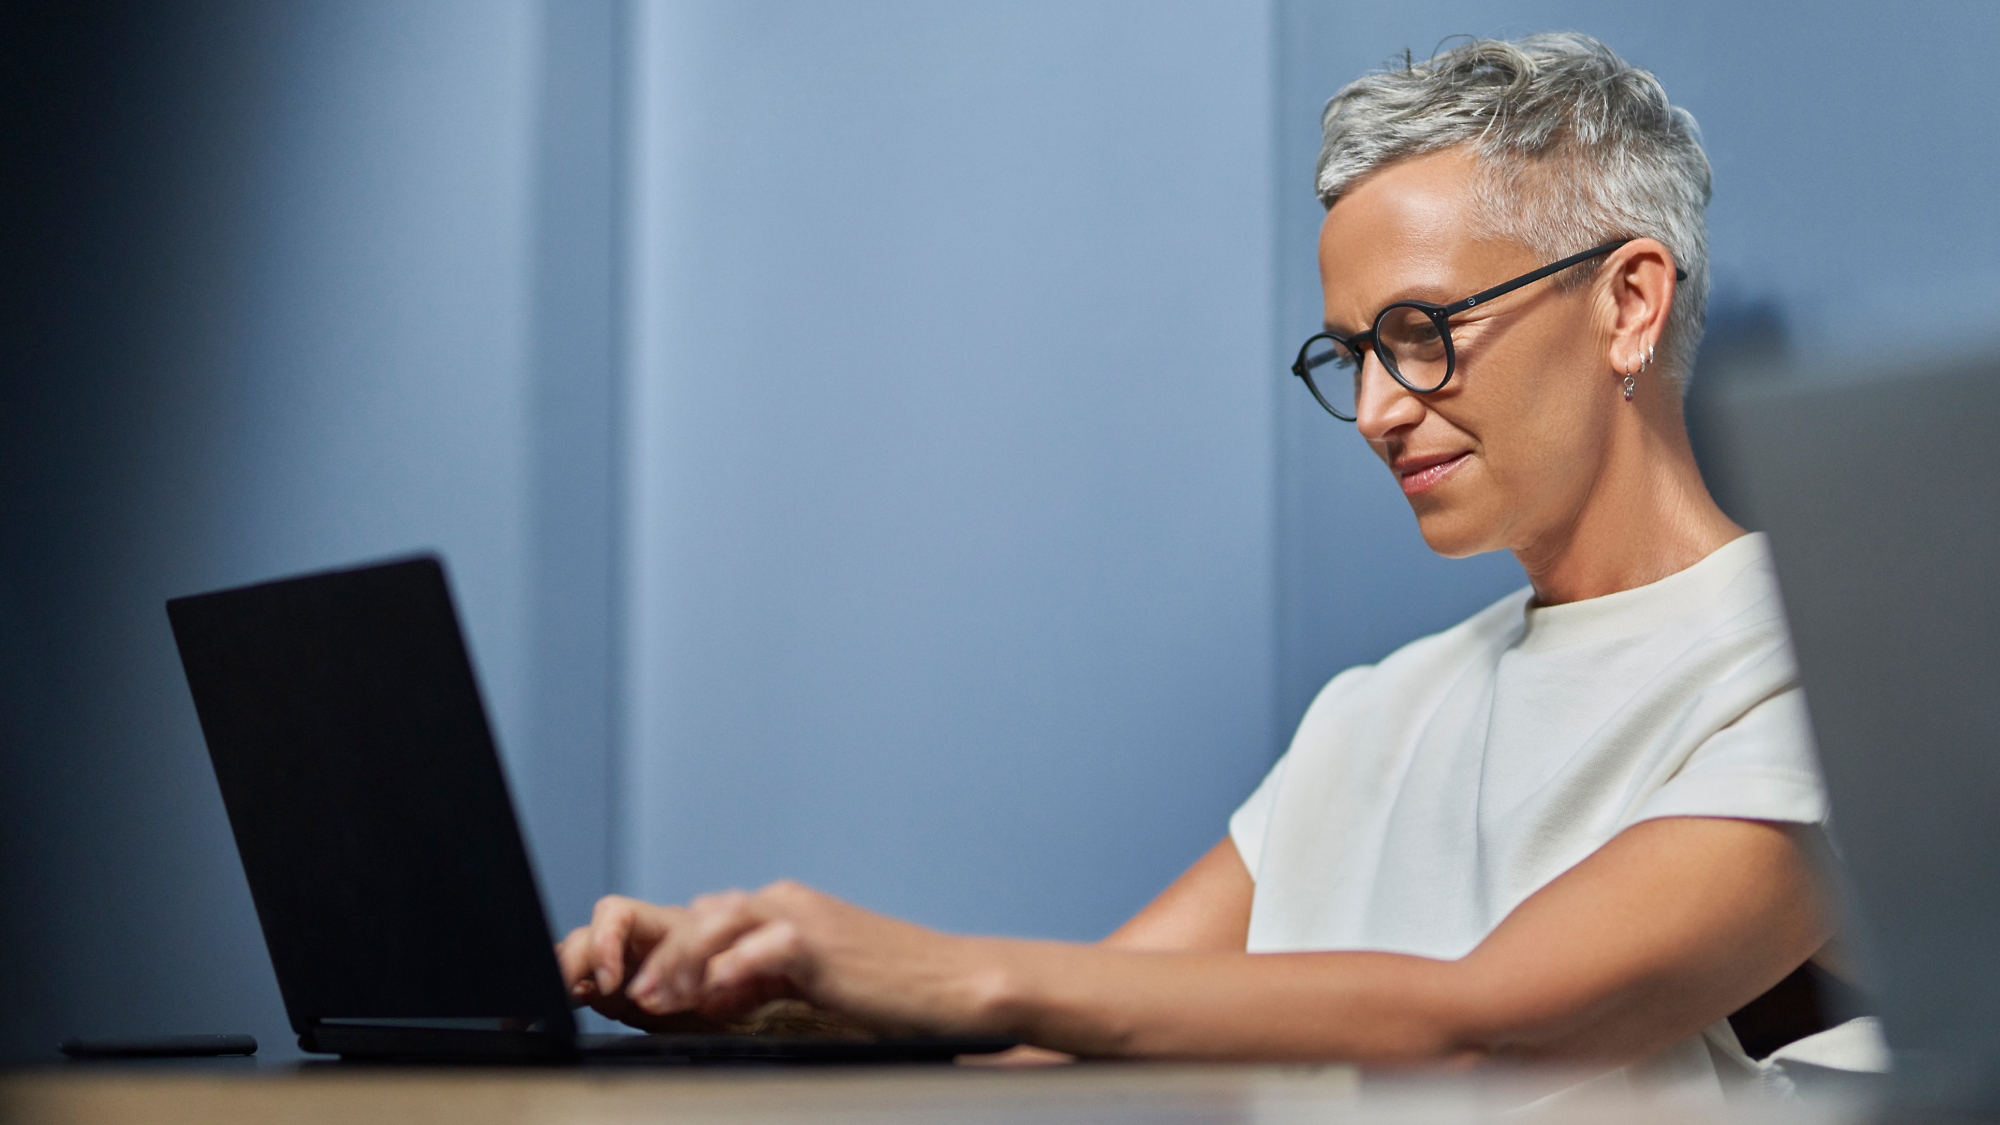 En moden kvinde med kort, gråt hår smiler og arbejder på en bærbar computer i et moderne kontormiljø.